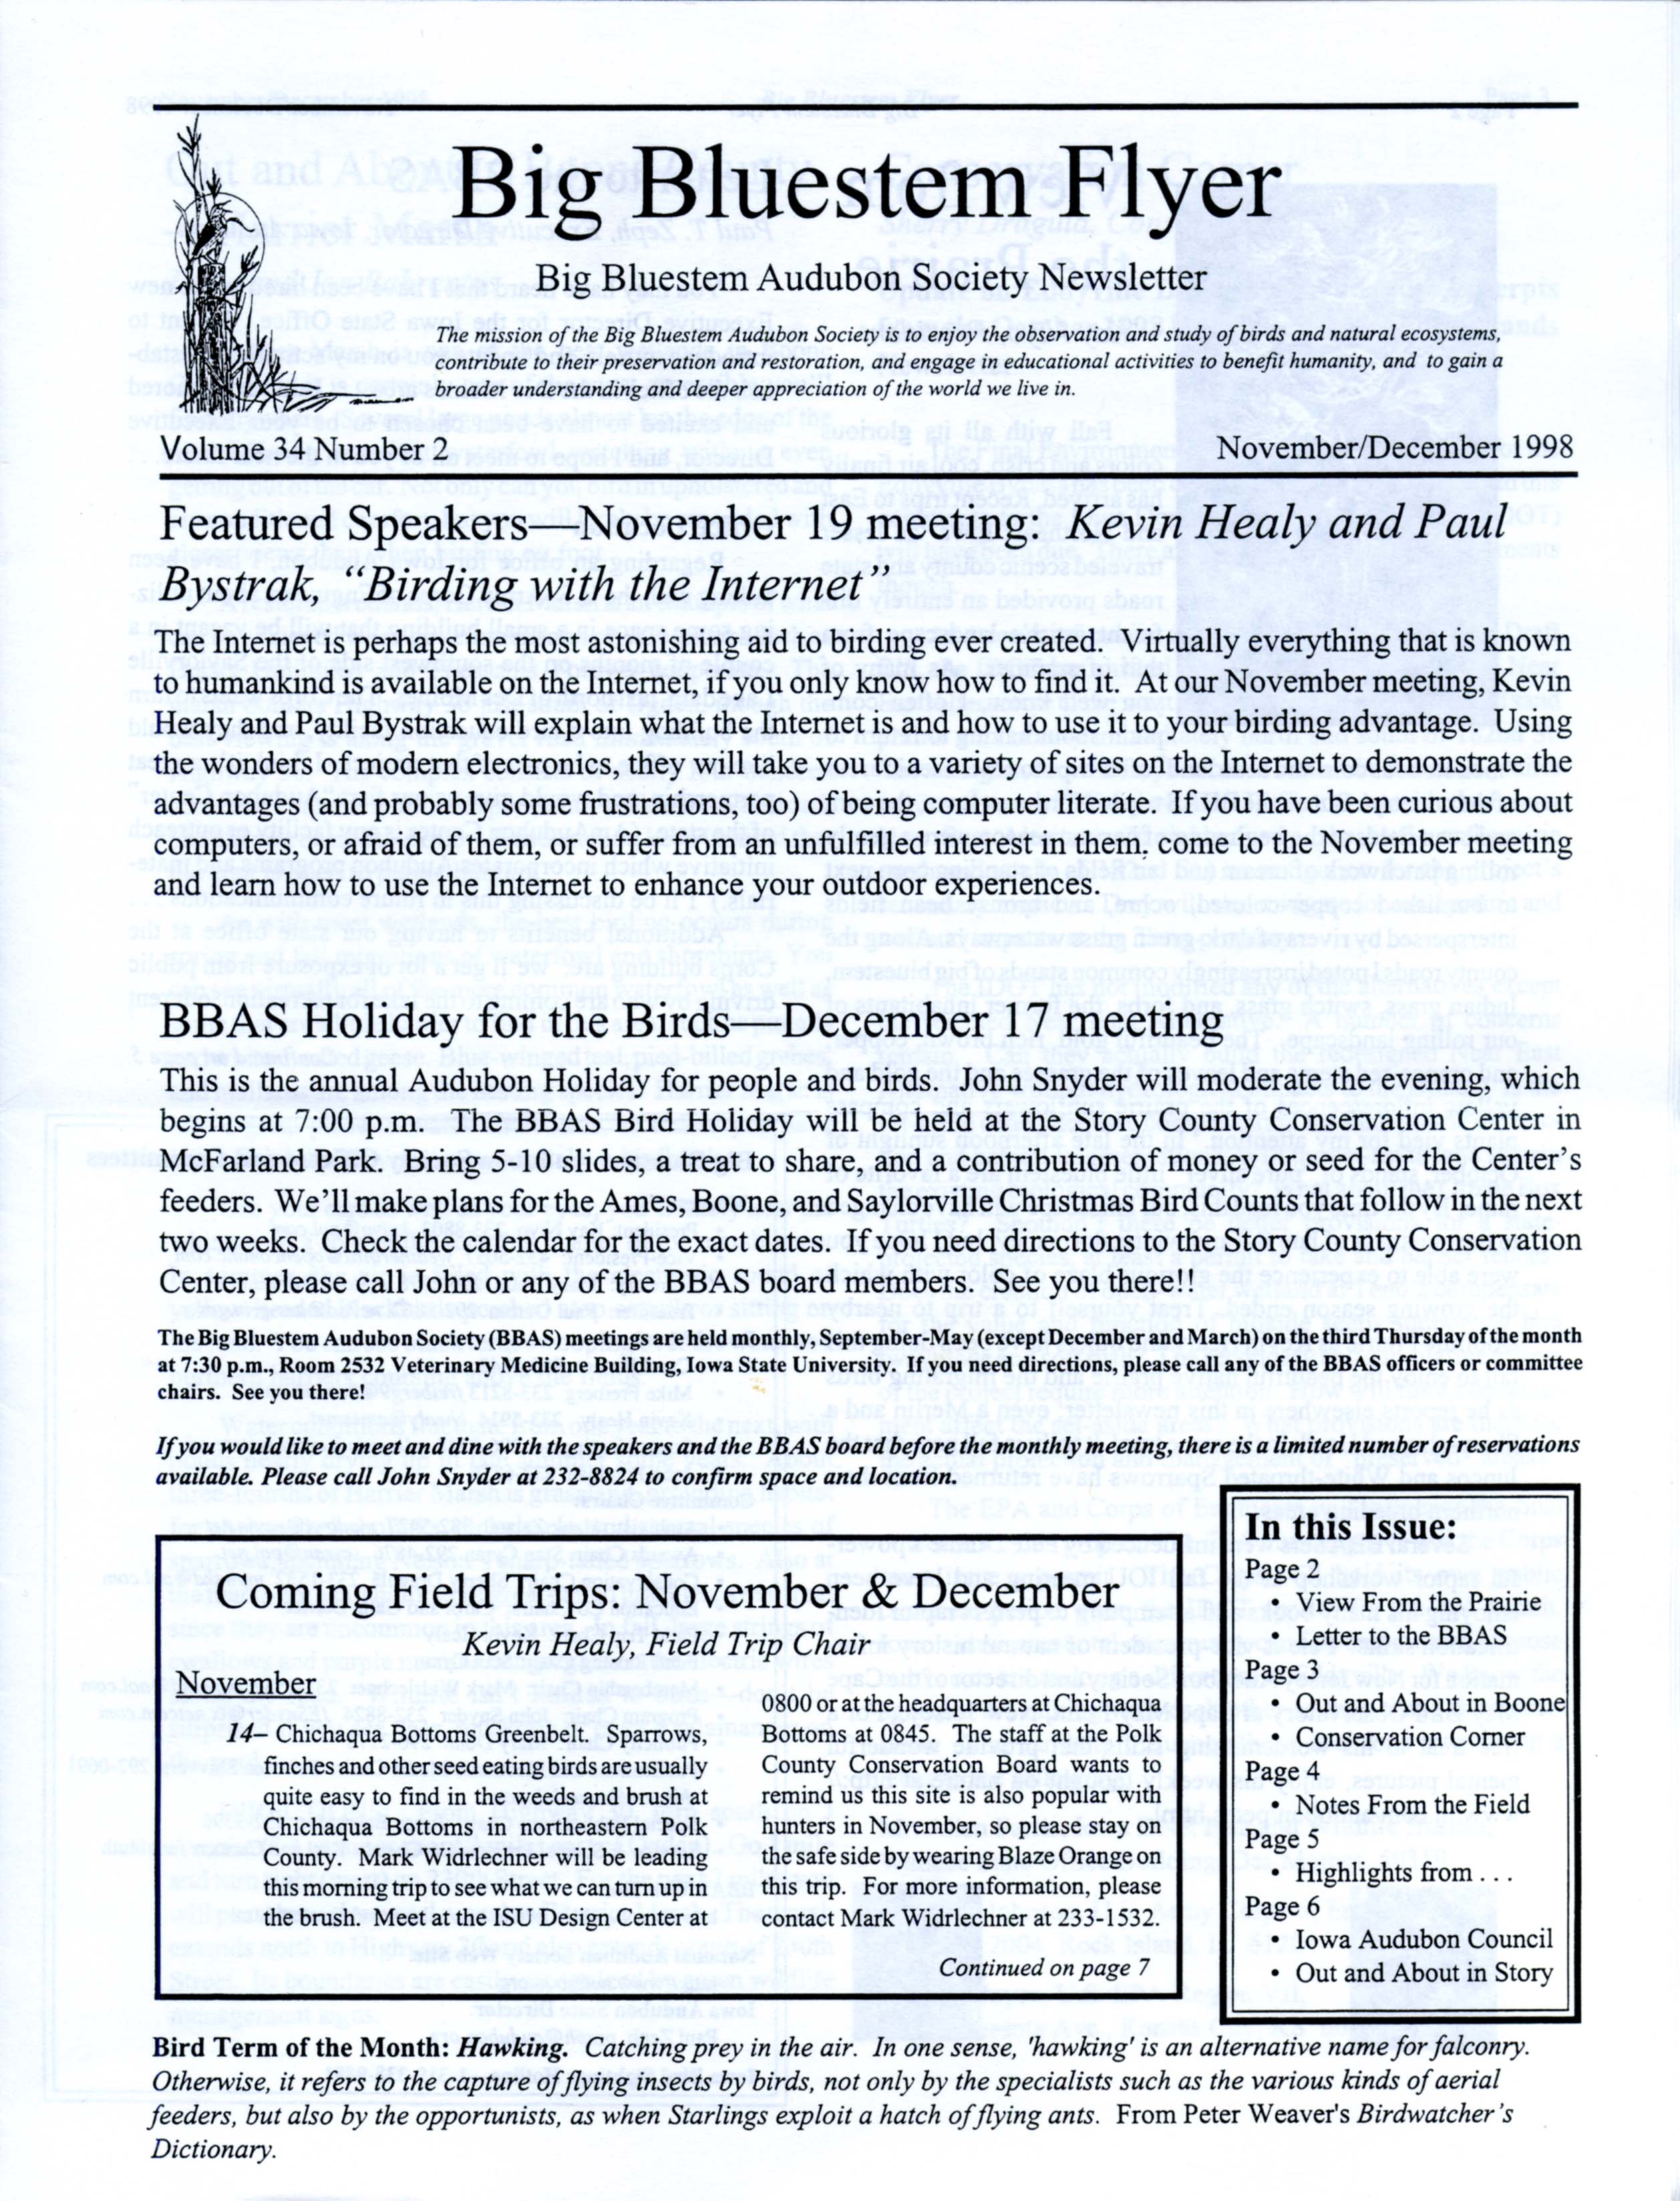 Big Bluestem Flyer, Volume 34, Number 2, November/December 1998